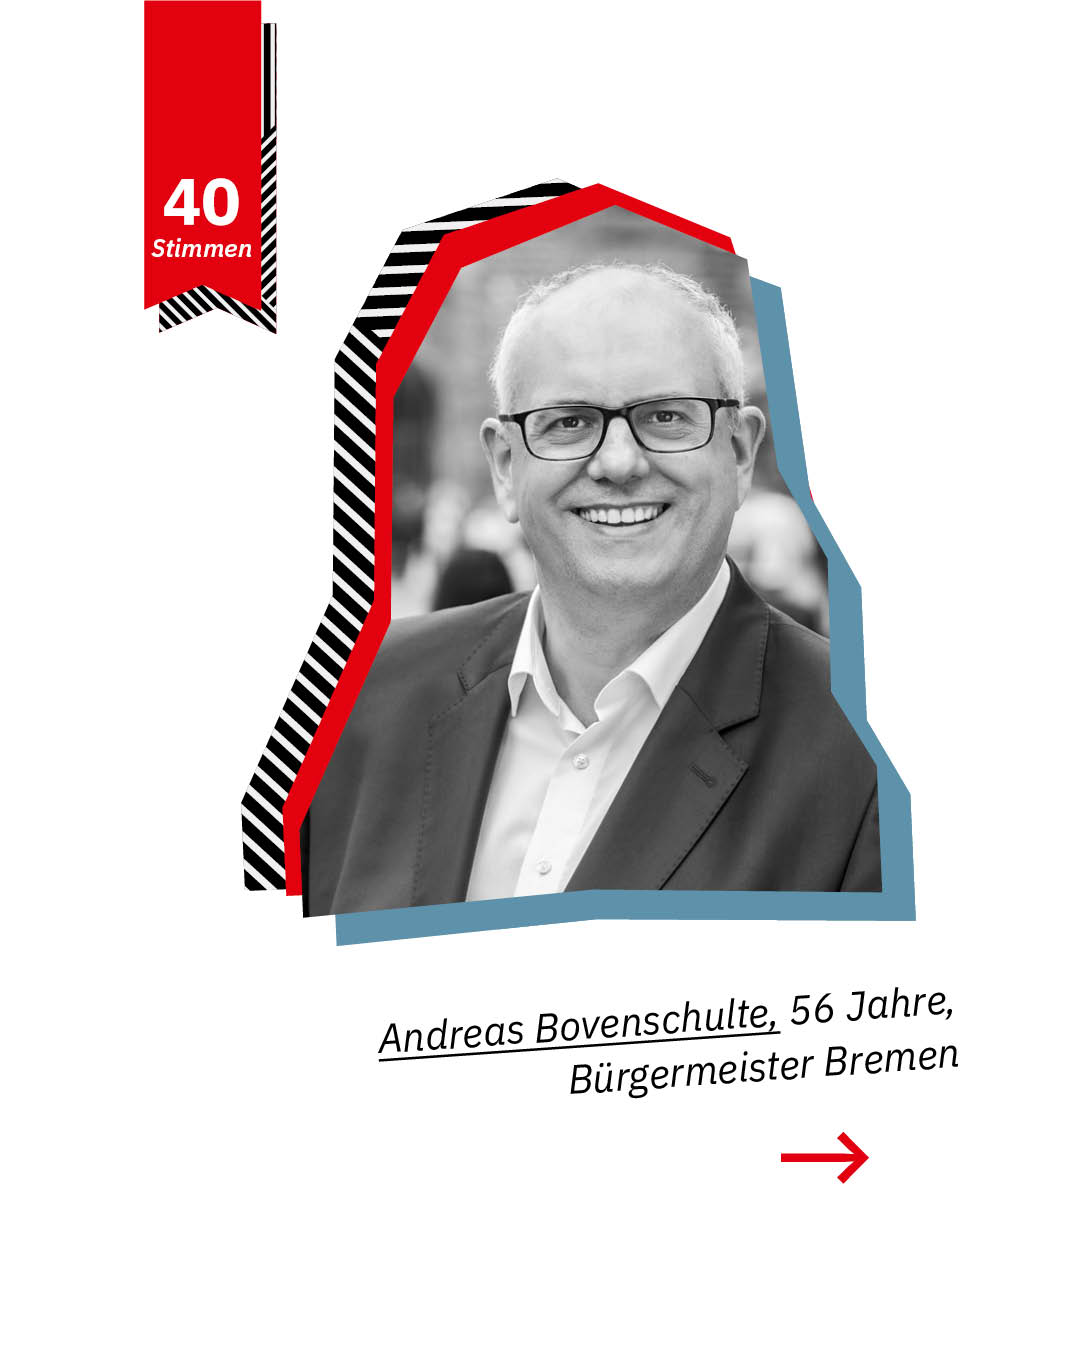 Statement 40 Jahre Gleichberechtigung, Andreas Bovenschulte, Bürgermeister Bremen